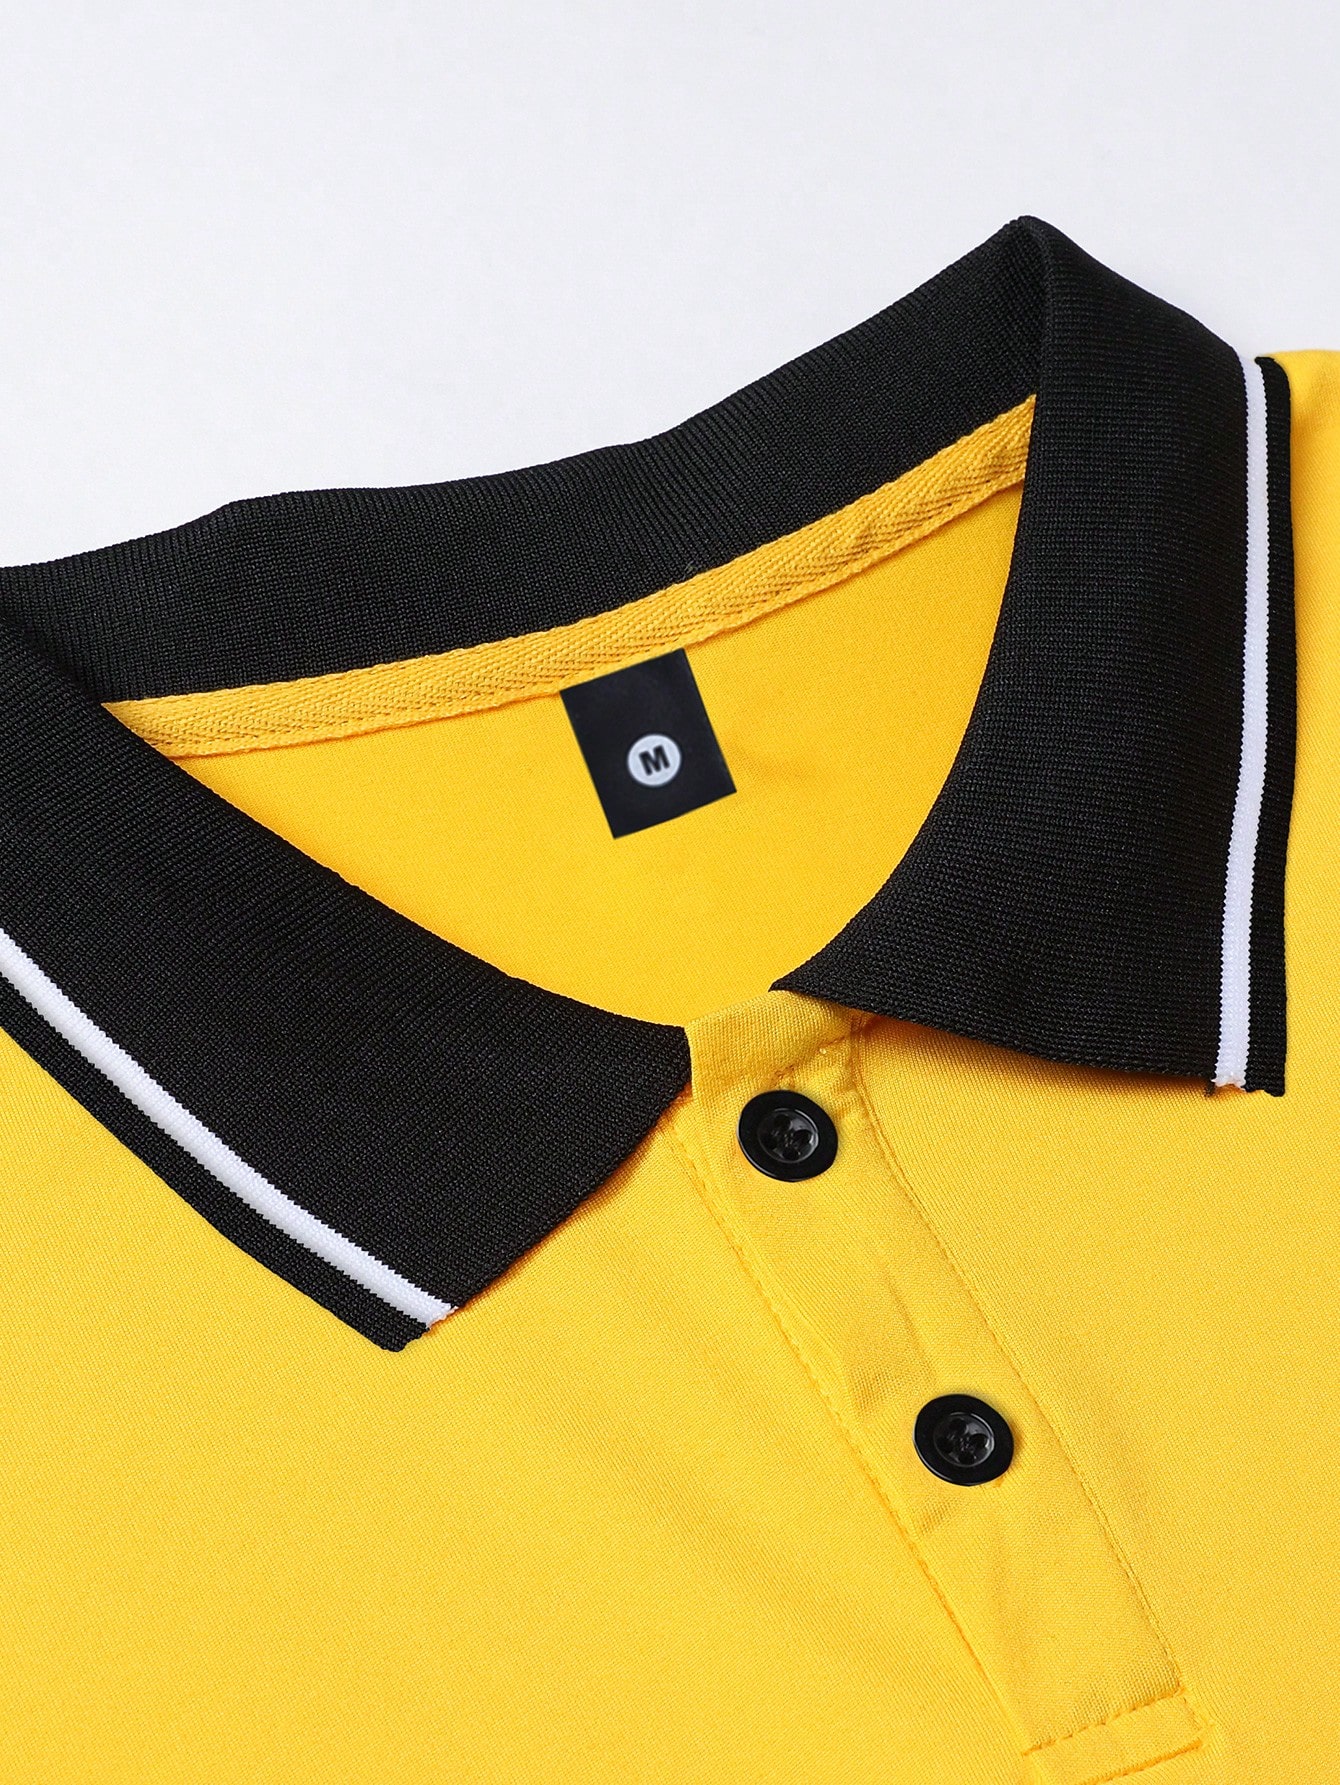 Муж. Лето в винтажном стиле с принтом «Бегущая лошадь» Освежающая желтая рубашка-поло с короткими рукавами, желтый